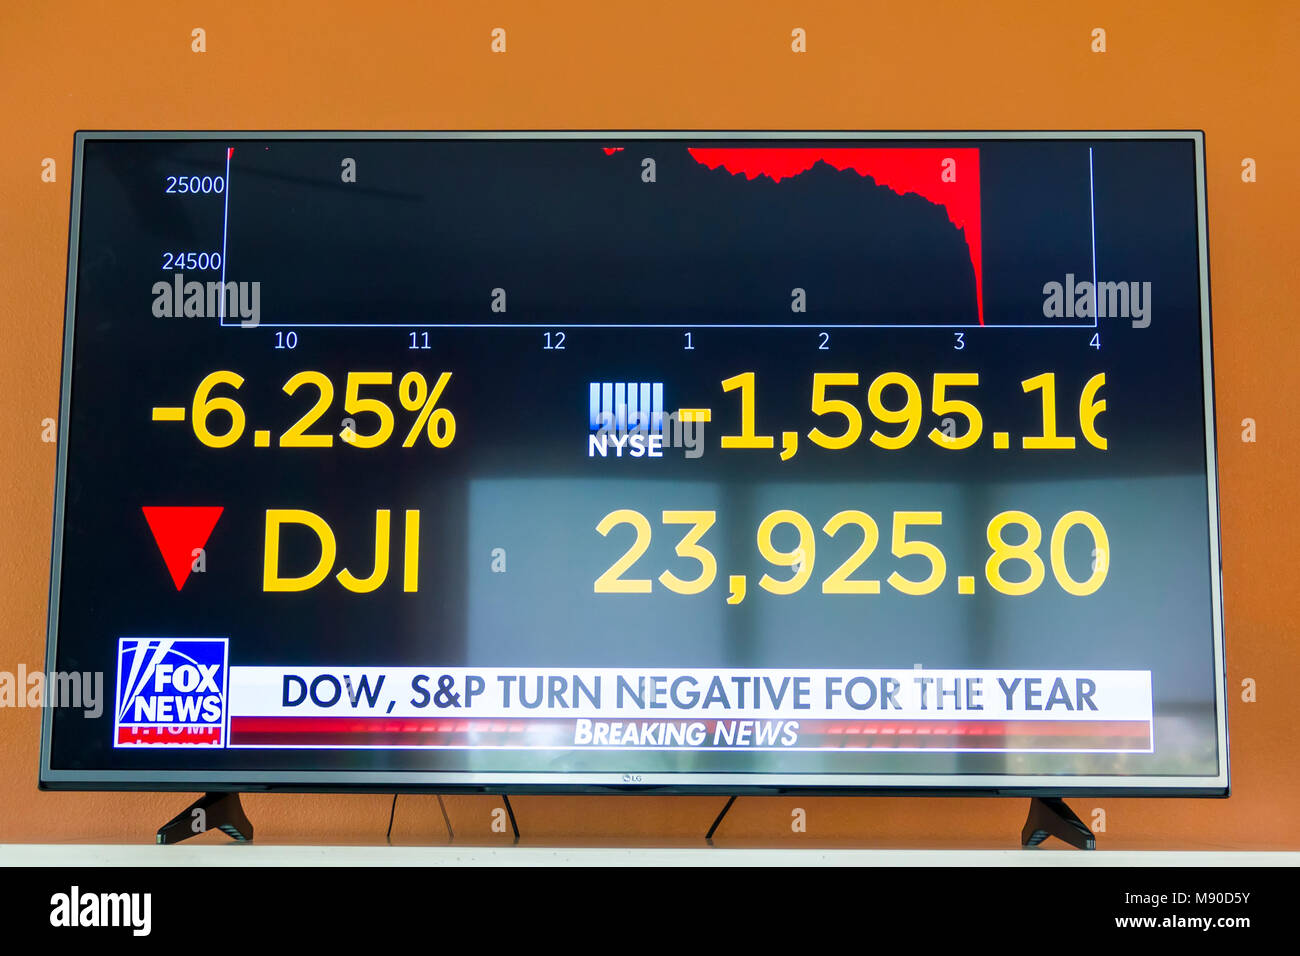 Evento de televisión televisión de un mercado bursátil Dow Jones industrials dj crash o corrección a la baja de más de 5 %i el 5 de febrero de 2017 Cierre de dow Foto de stock